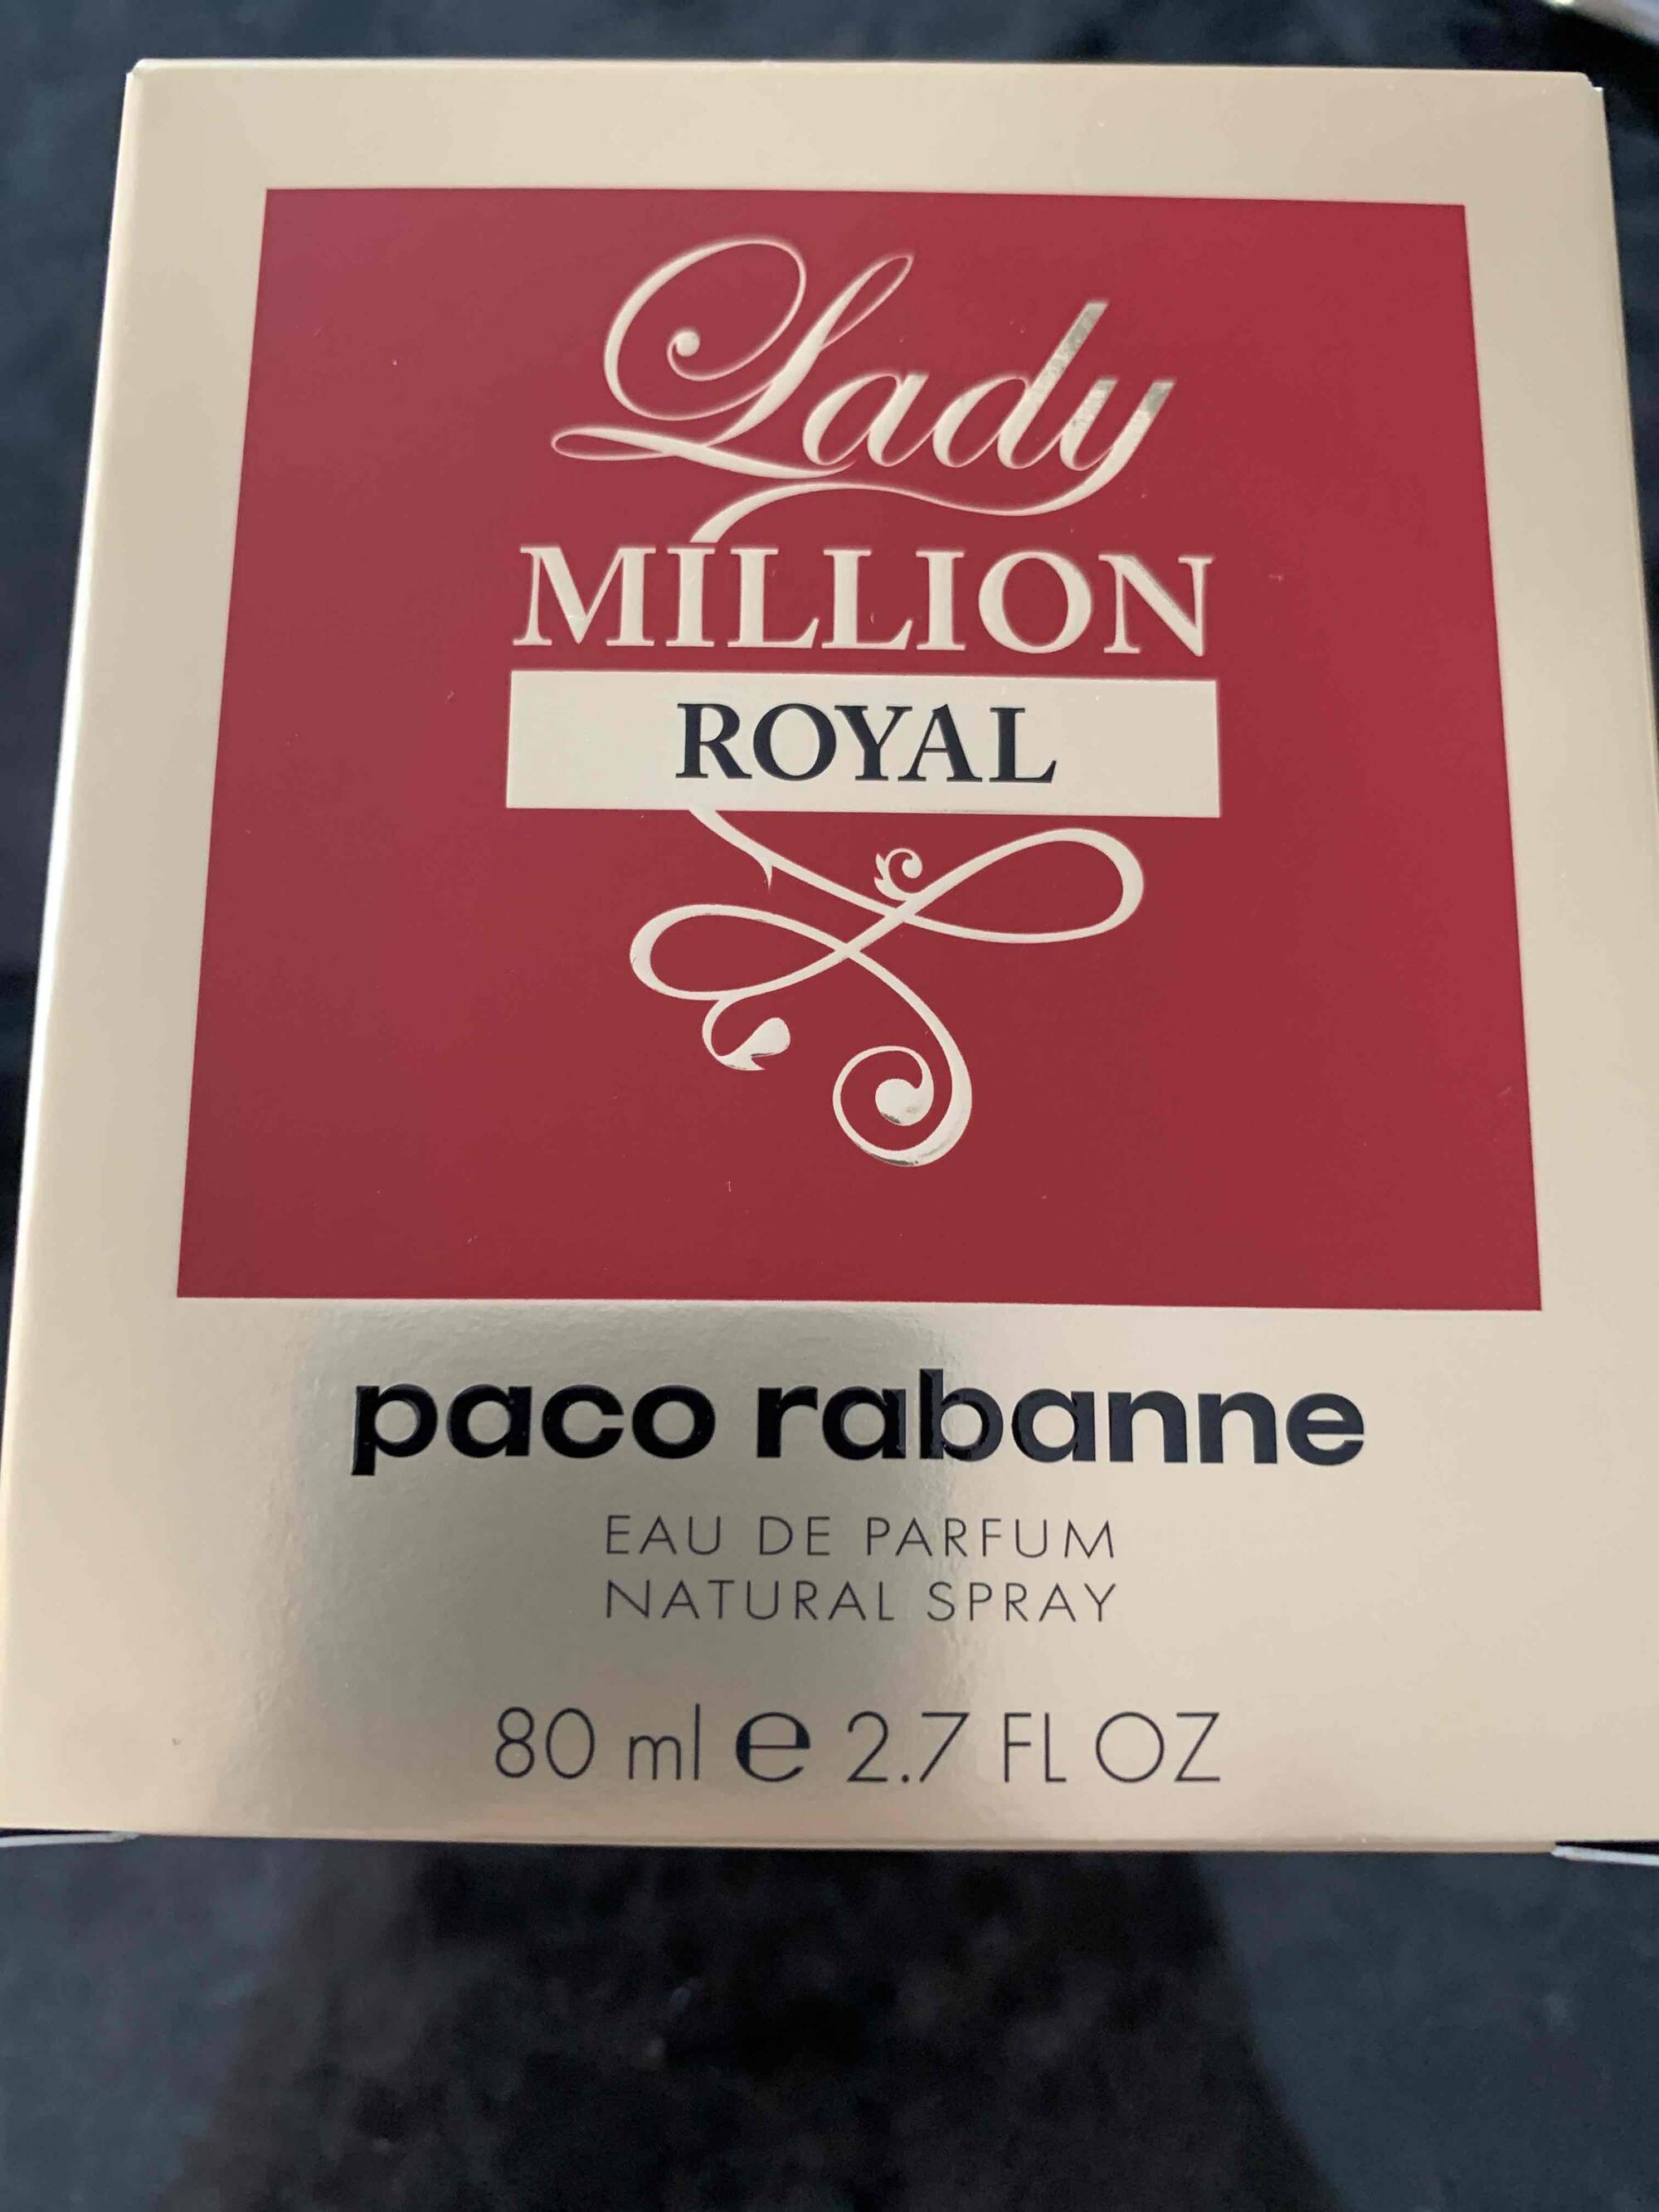 PACO RABANNE - Lady million royal - Eau de parfum